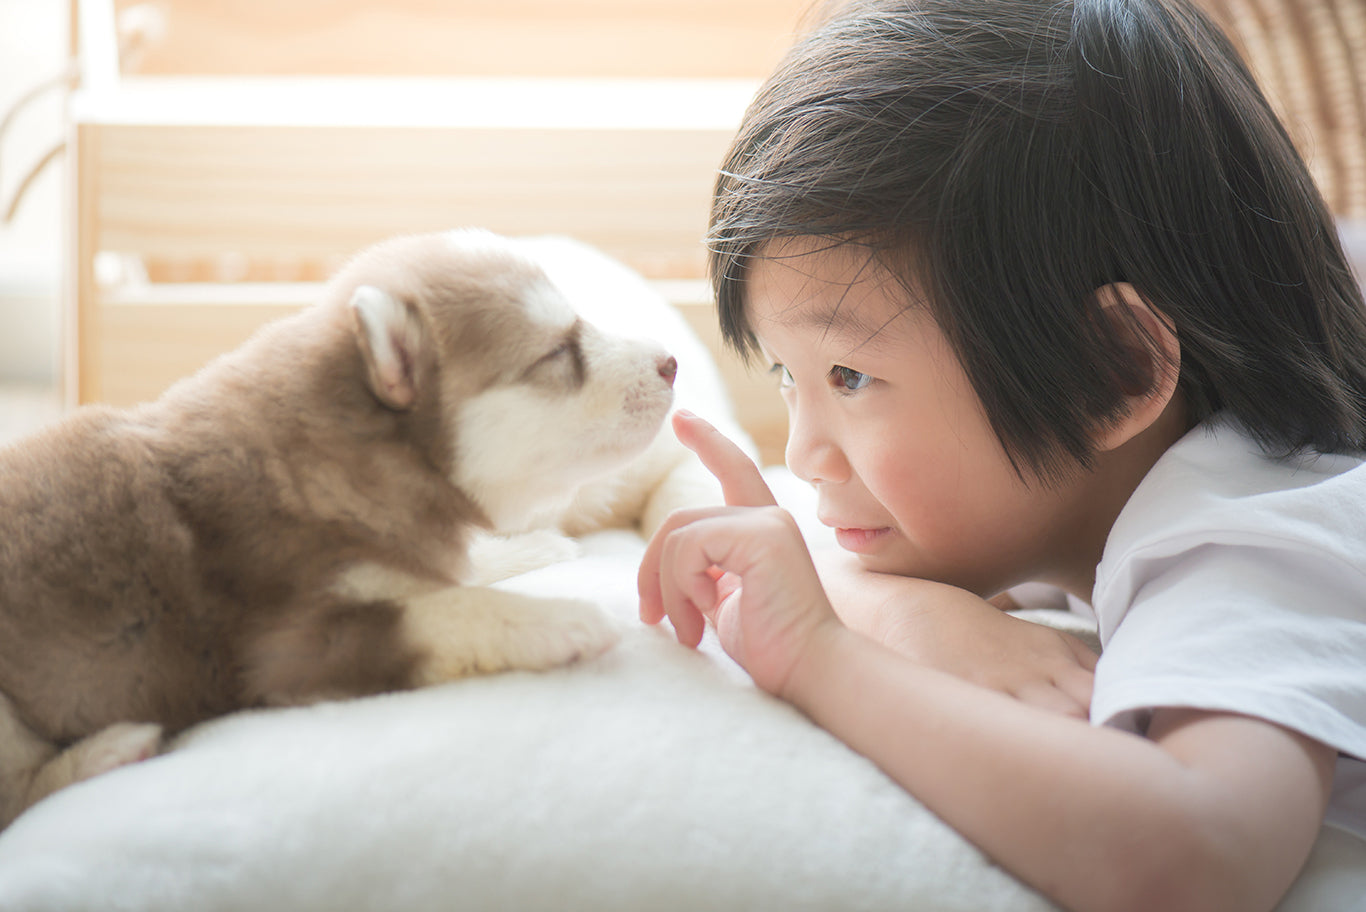 シベリアンハスキーの子犬と遊ぶかわいいアジアの子供